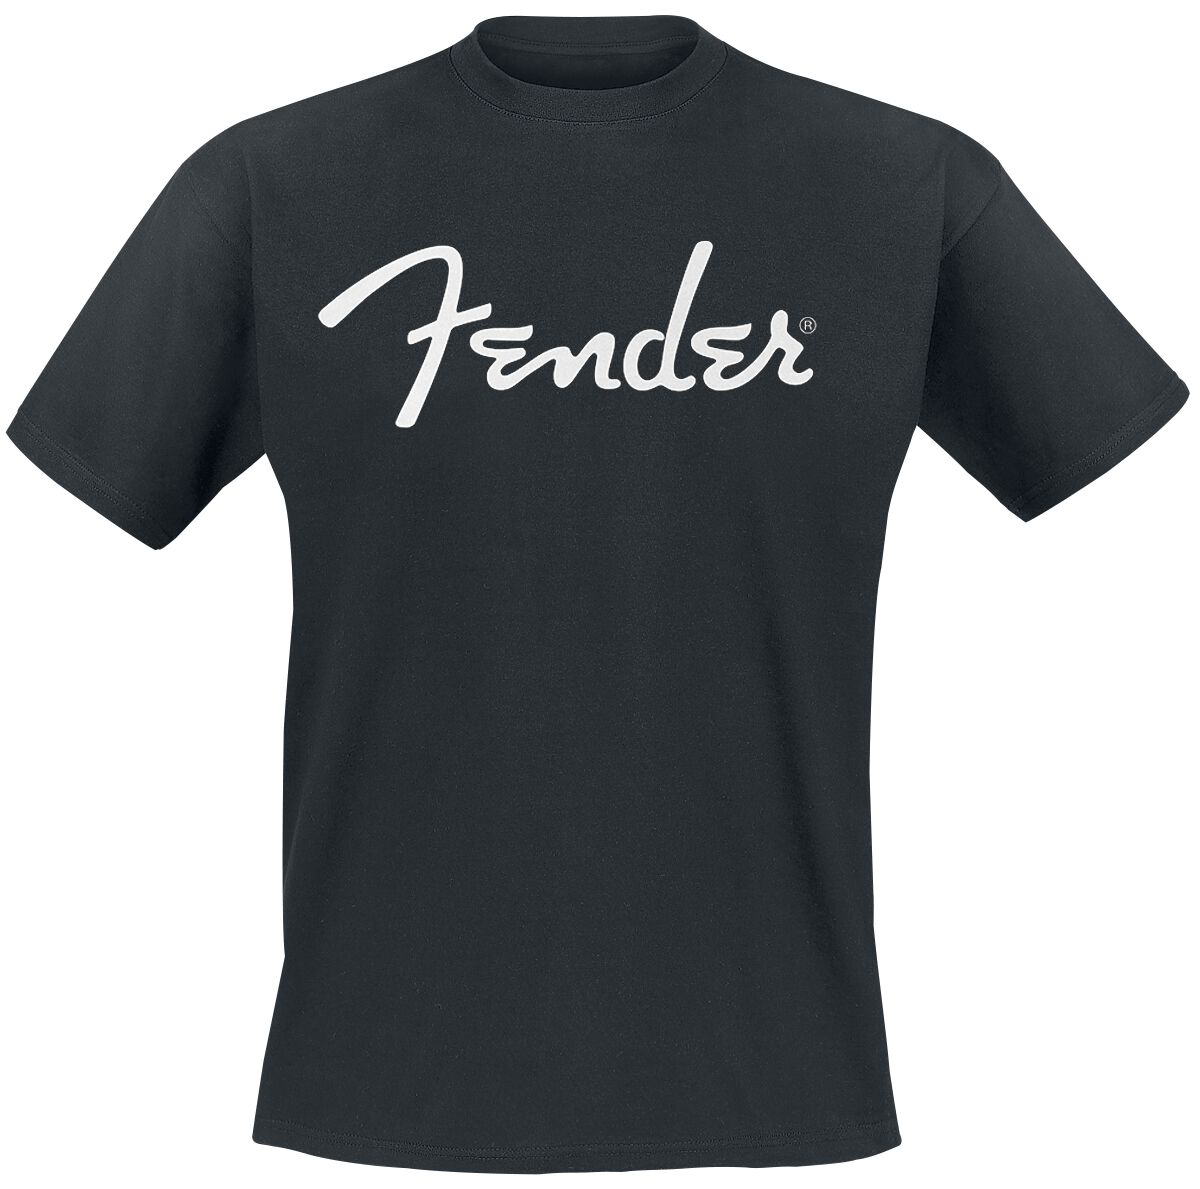 Fender T-Shirt - Classic Logo - S bis XXL - für Männer - Größe S - schwarz  - Lizenziertes Merchandise!